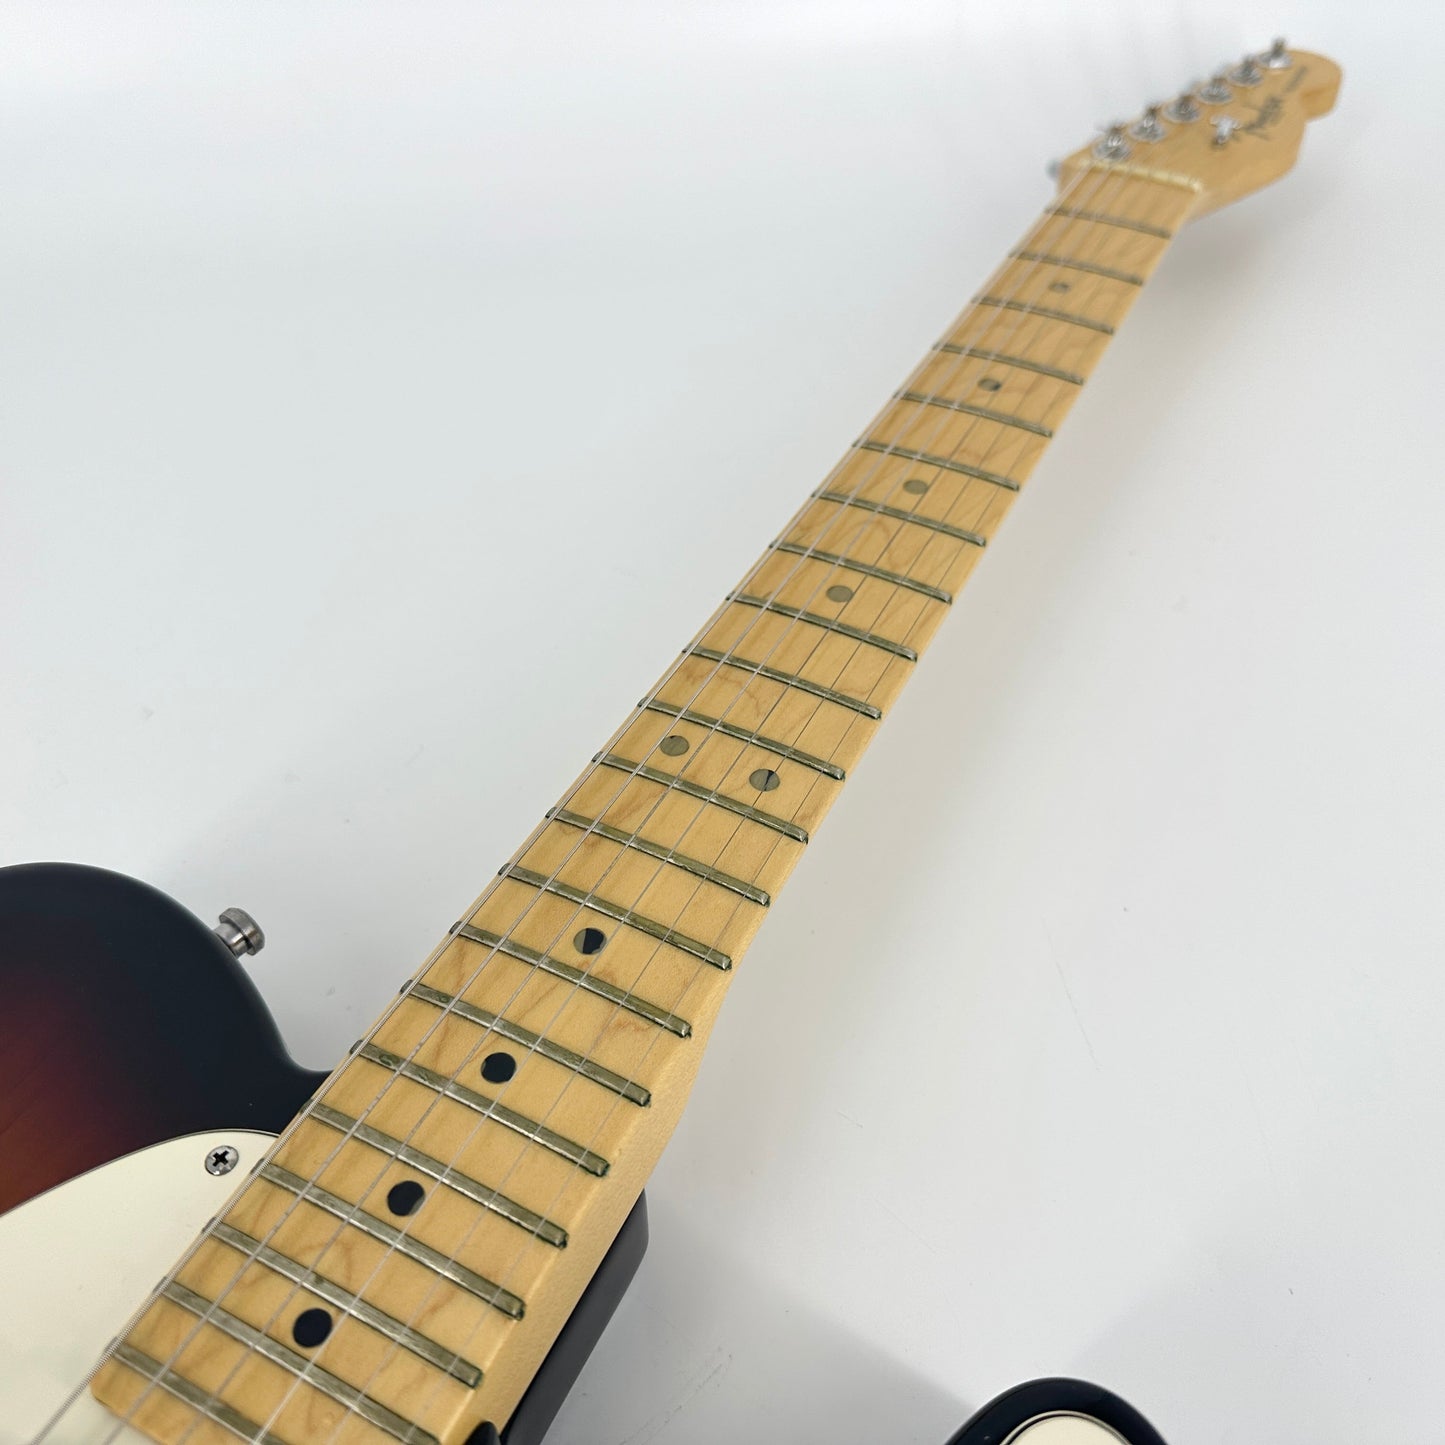 2001 Fender American Series Telecaster – 3 Colour Sunburst